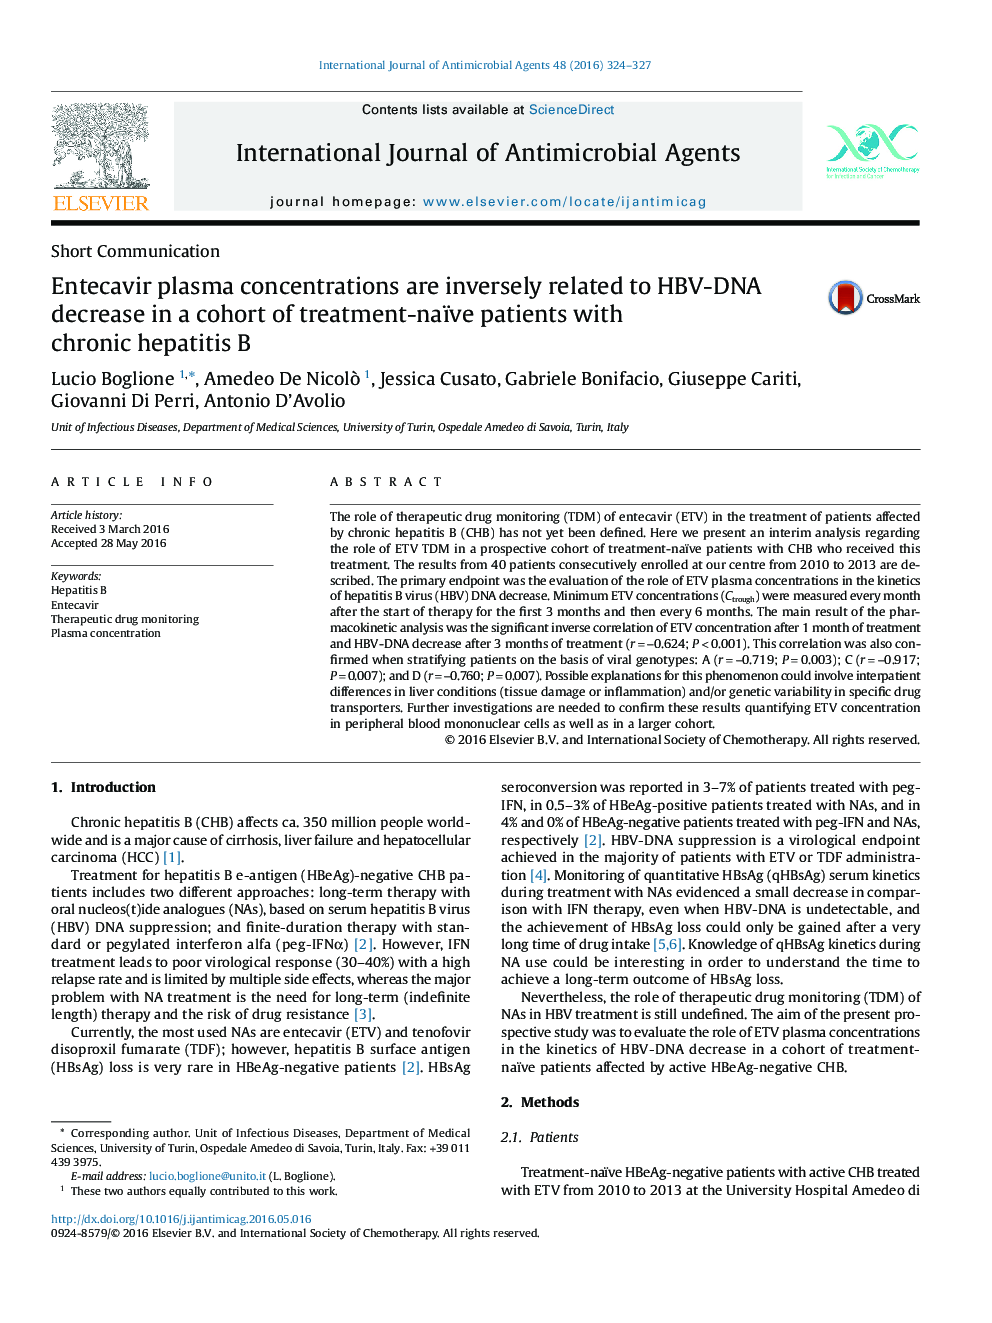 غلظت پلاسمای Entecavir به طور معکوس با کاهش HBV-DNA در یک گروه از بیماران مبتلا به هپاتیت مزمن B در ارتباط است 